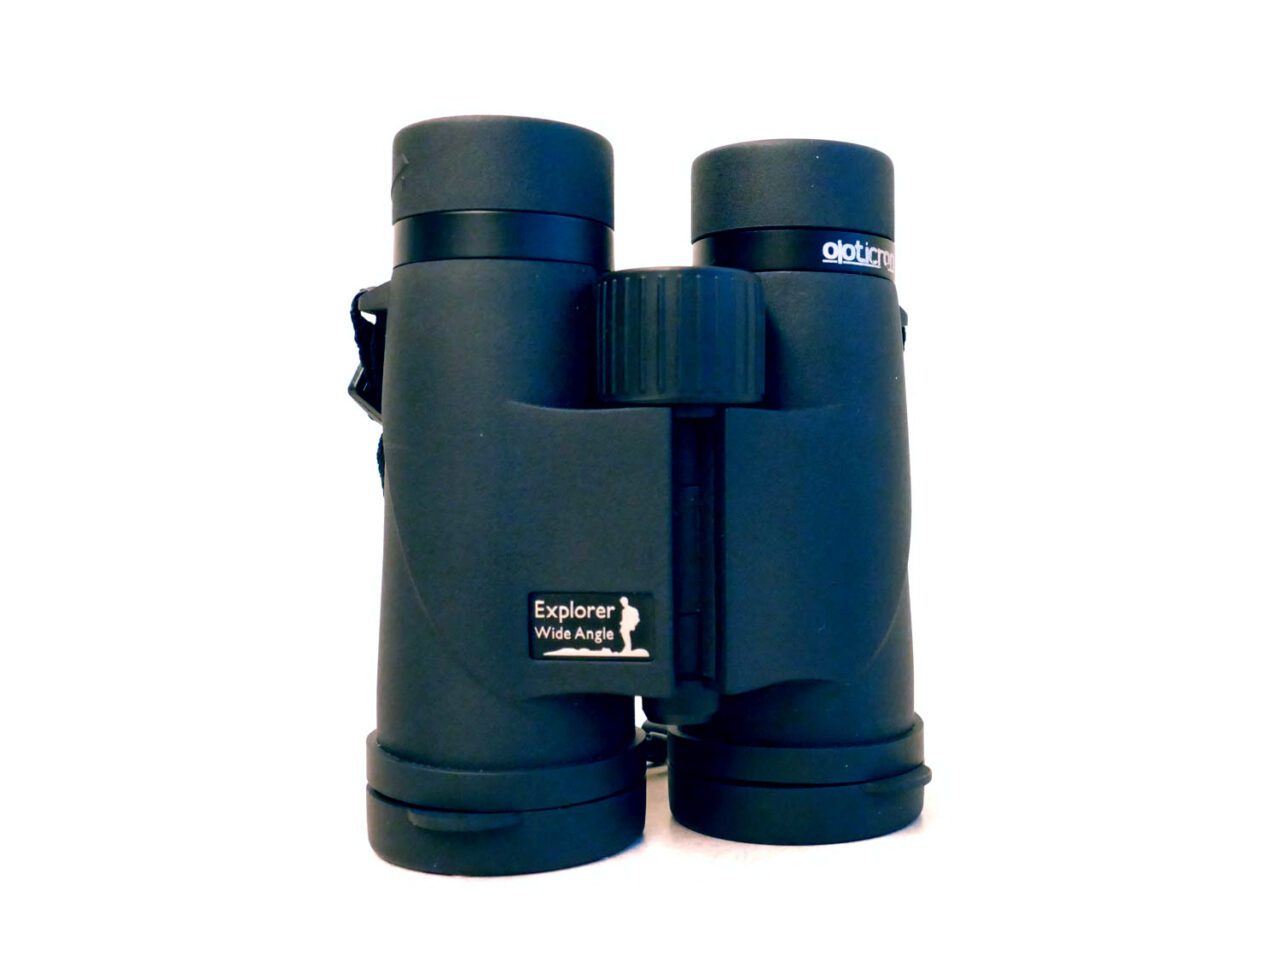 Opticron Explorer WA ED-R 8x42 binoculars